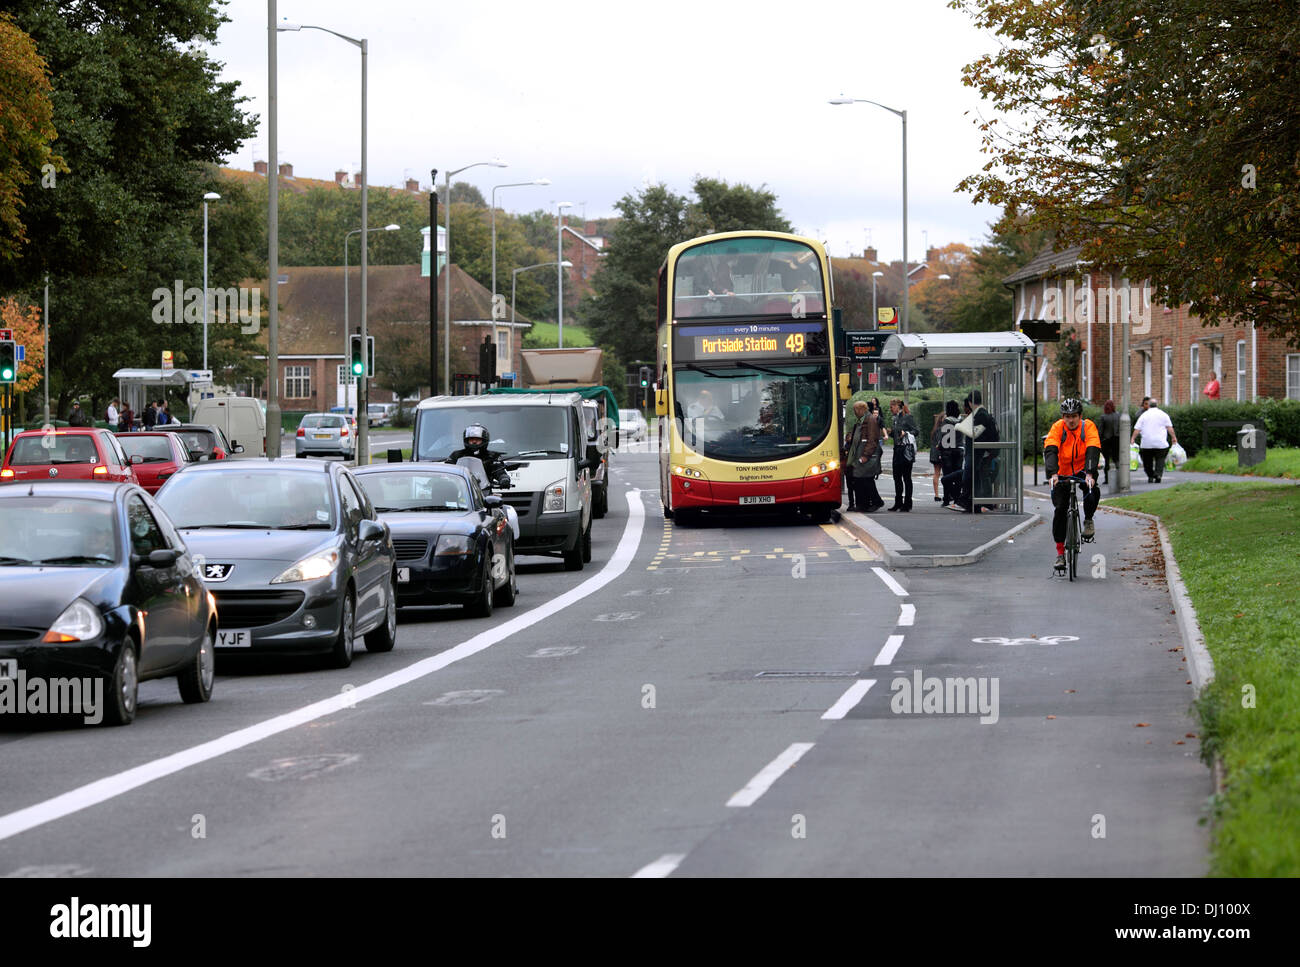 Arrêt de bus situé entre les voies de bus et cyclables séparées, Lewes Road, Brighton. Parfois appelé un «arrêt de bus flottant». Banque D'Images